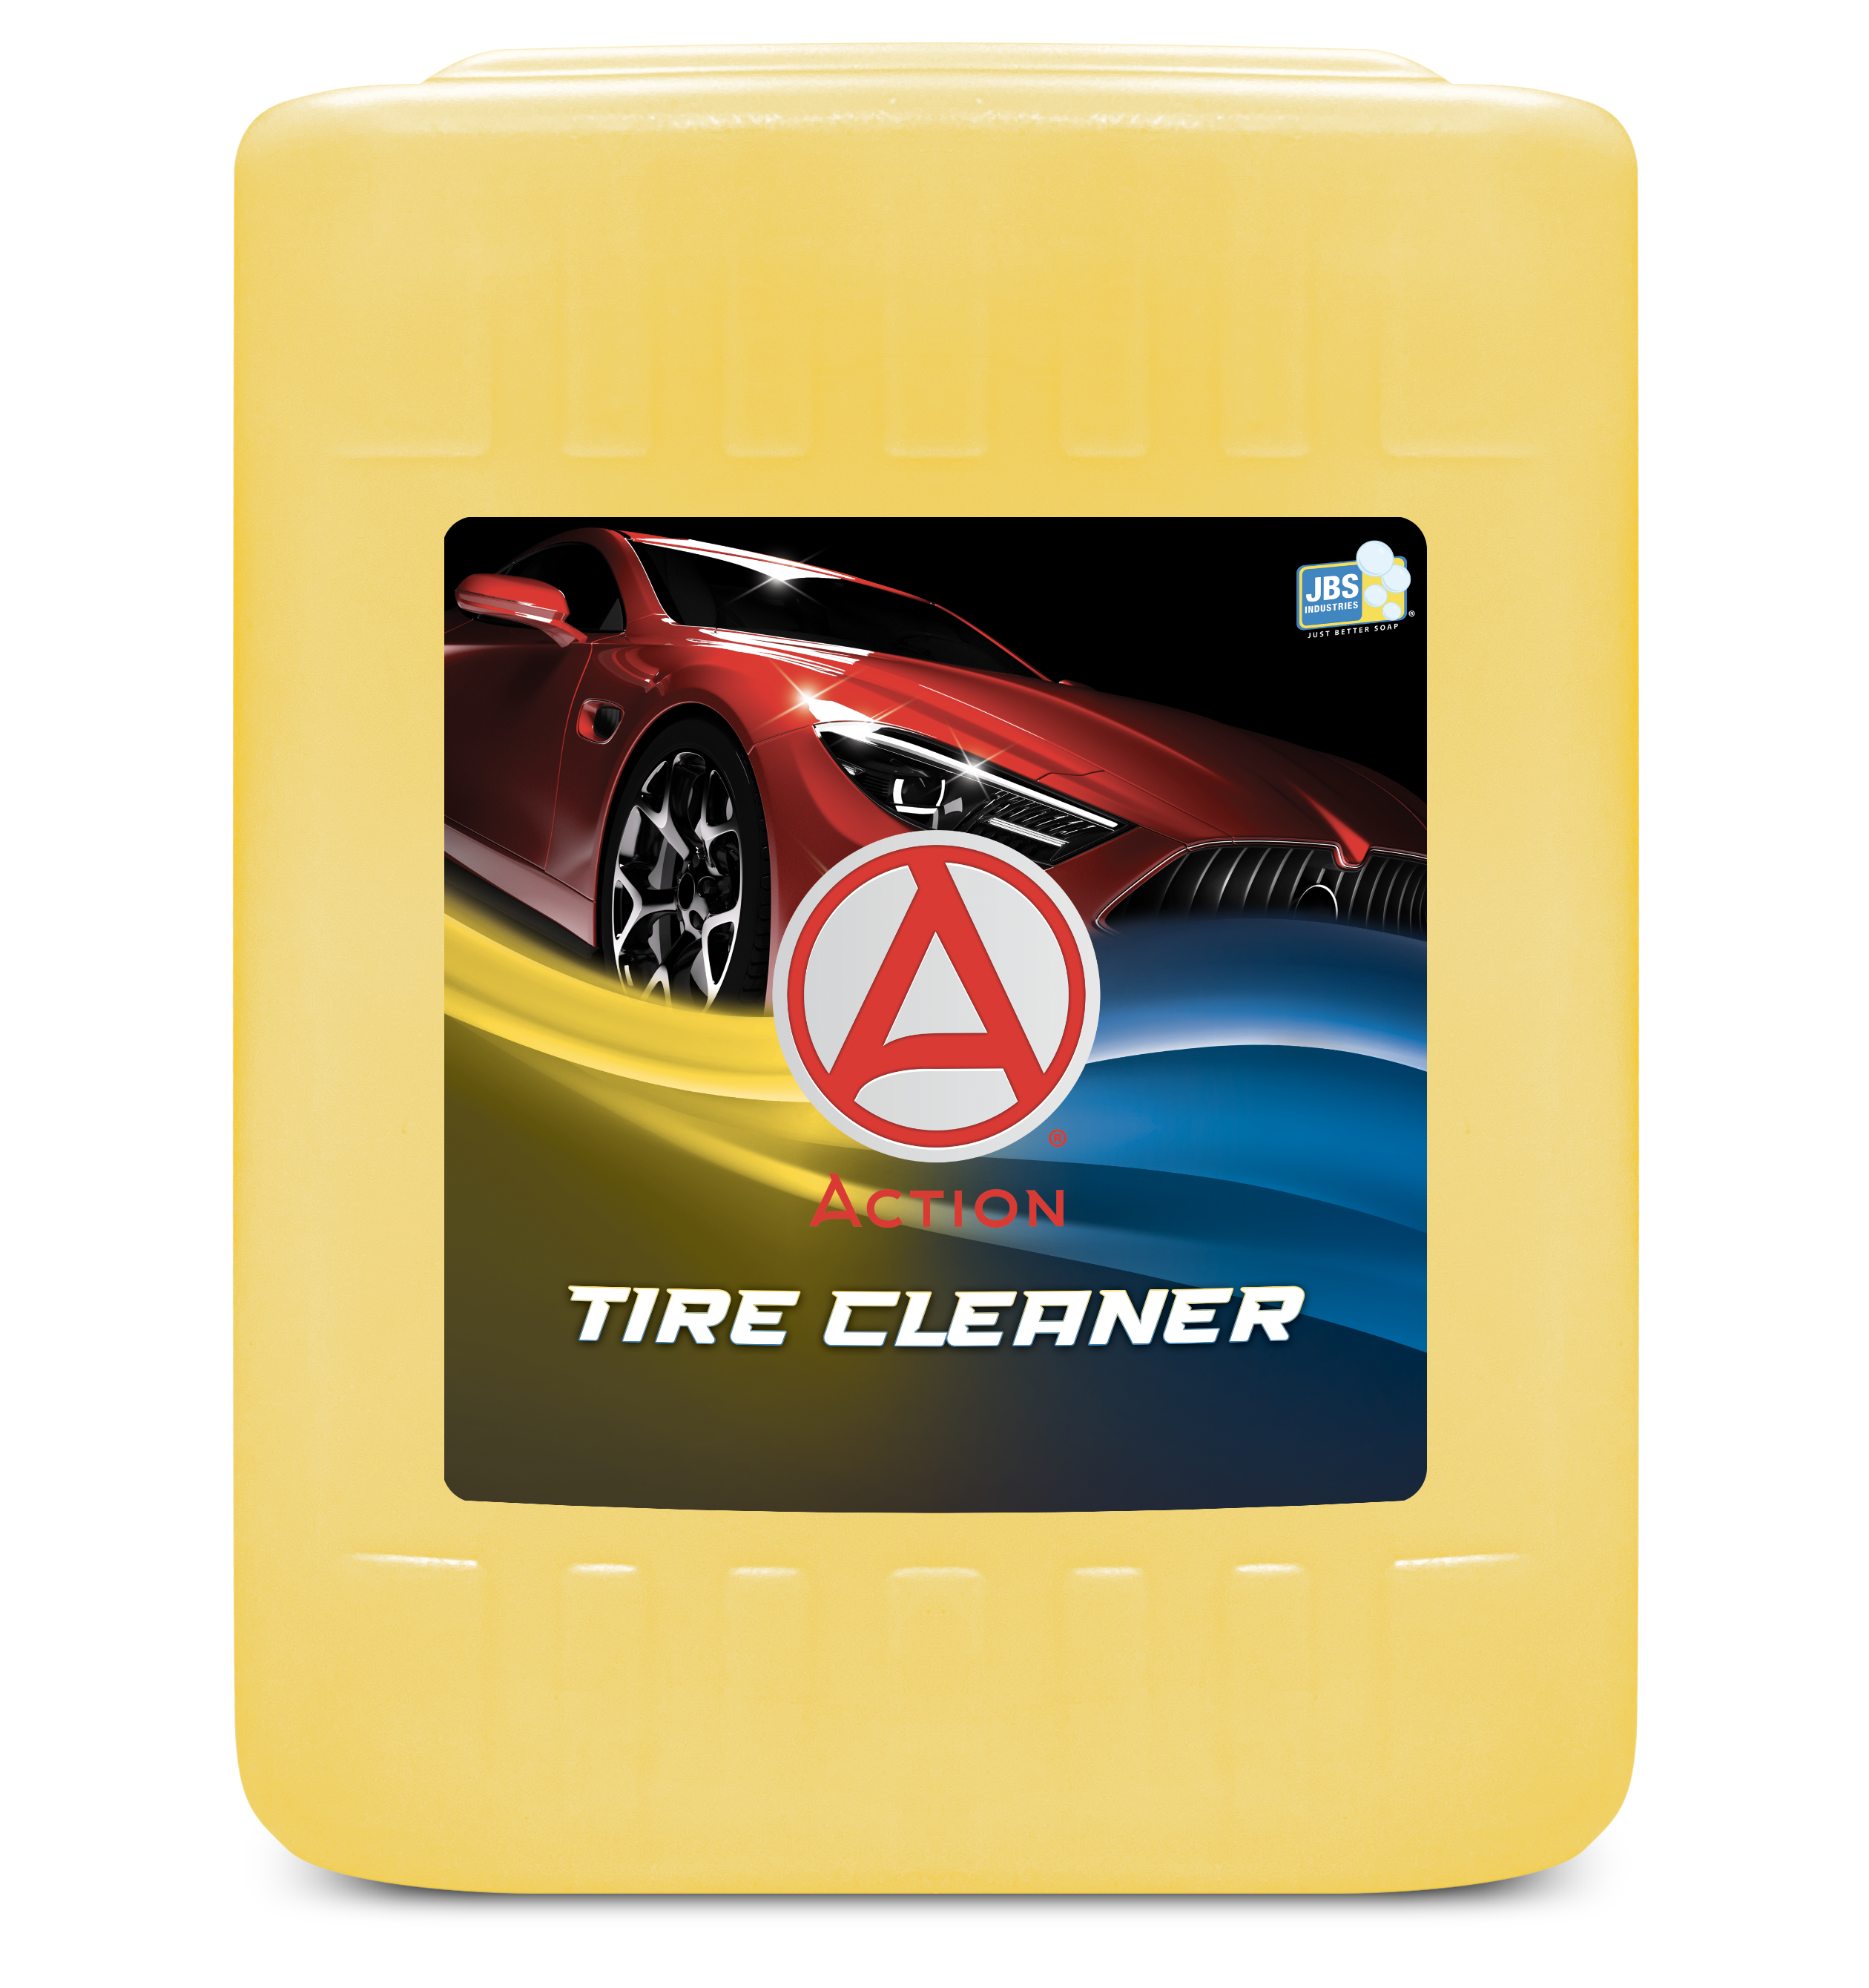  NASCAR - Runnin' Shine Wheel & Tire Cleaner 16oz - Professional  Grade Wheel Cleaner for Car Detailing, Rim Cleaner & Brake Dust Remover